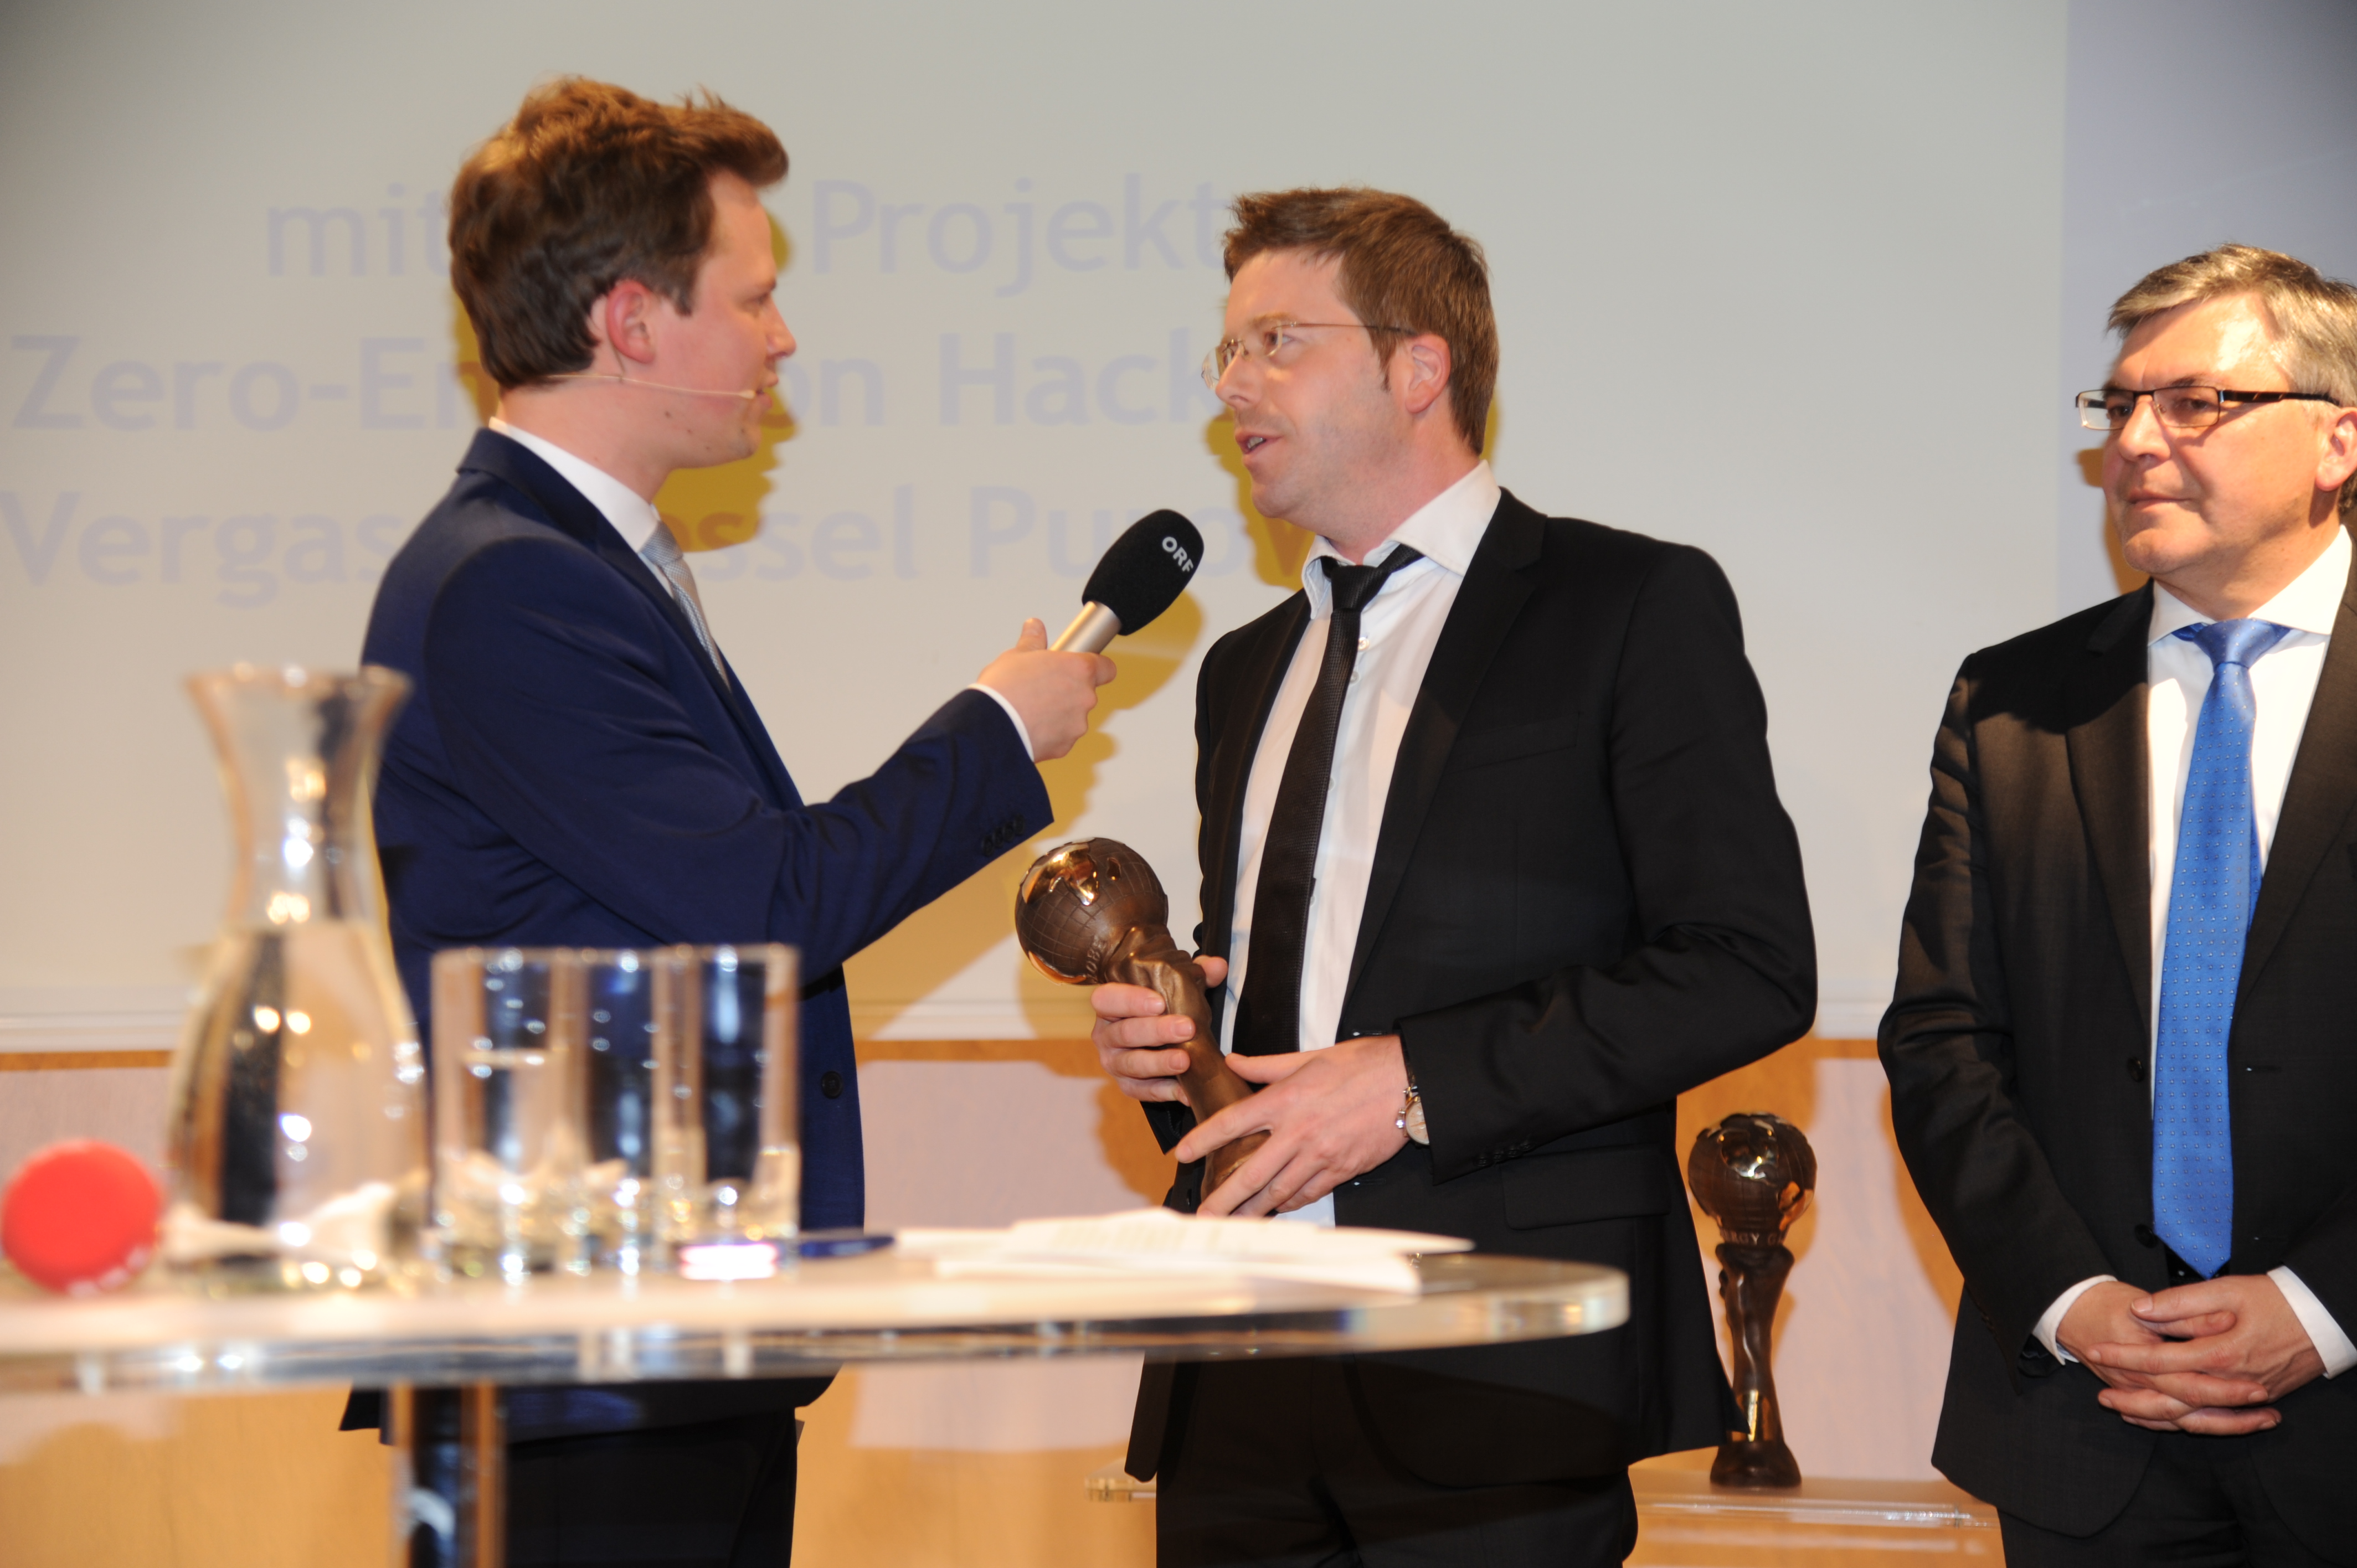 Foto: Energy Globe; Windhager Geschäftsführer Markus Buchmayr bei der Übergabe des Energy Globe Awards